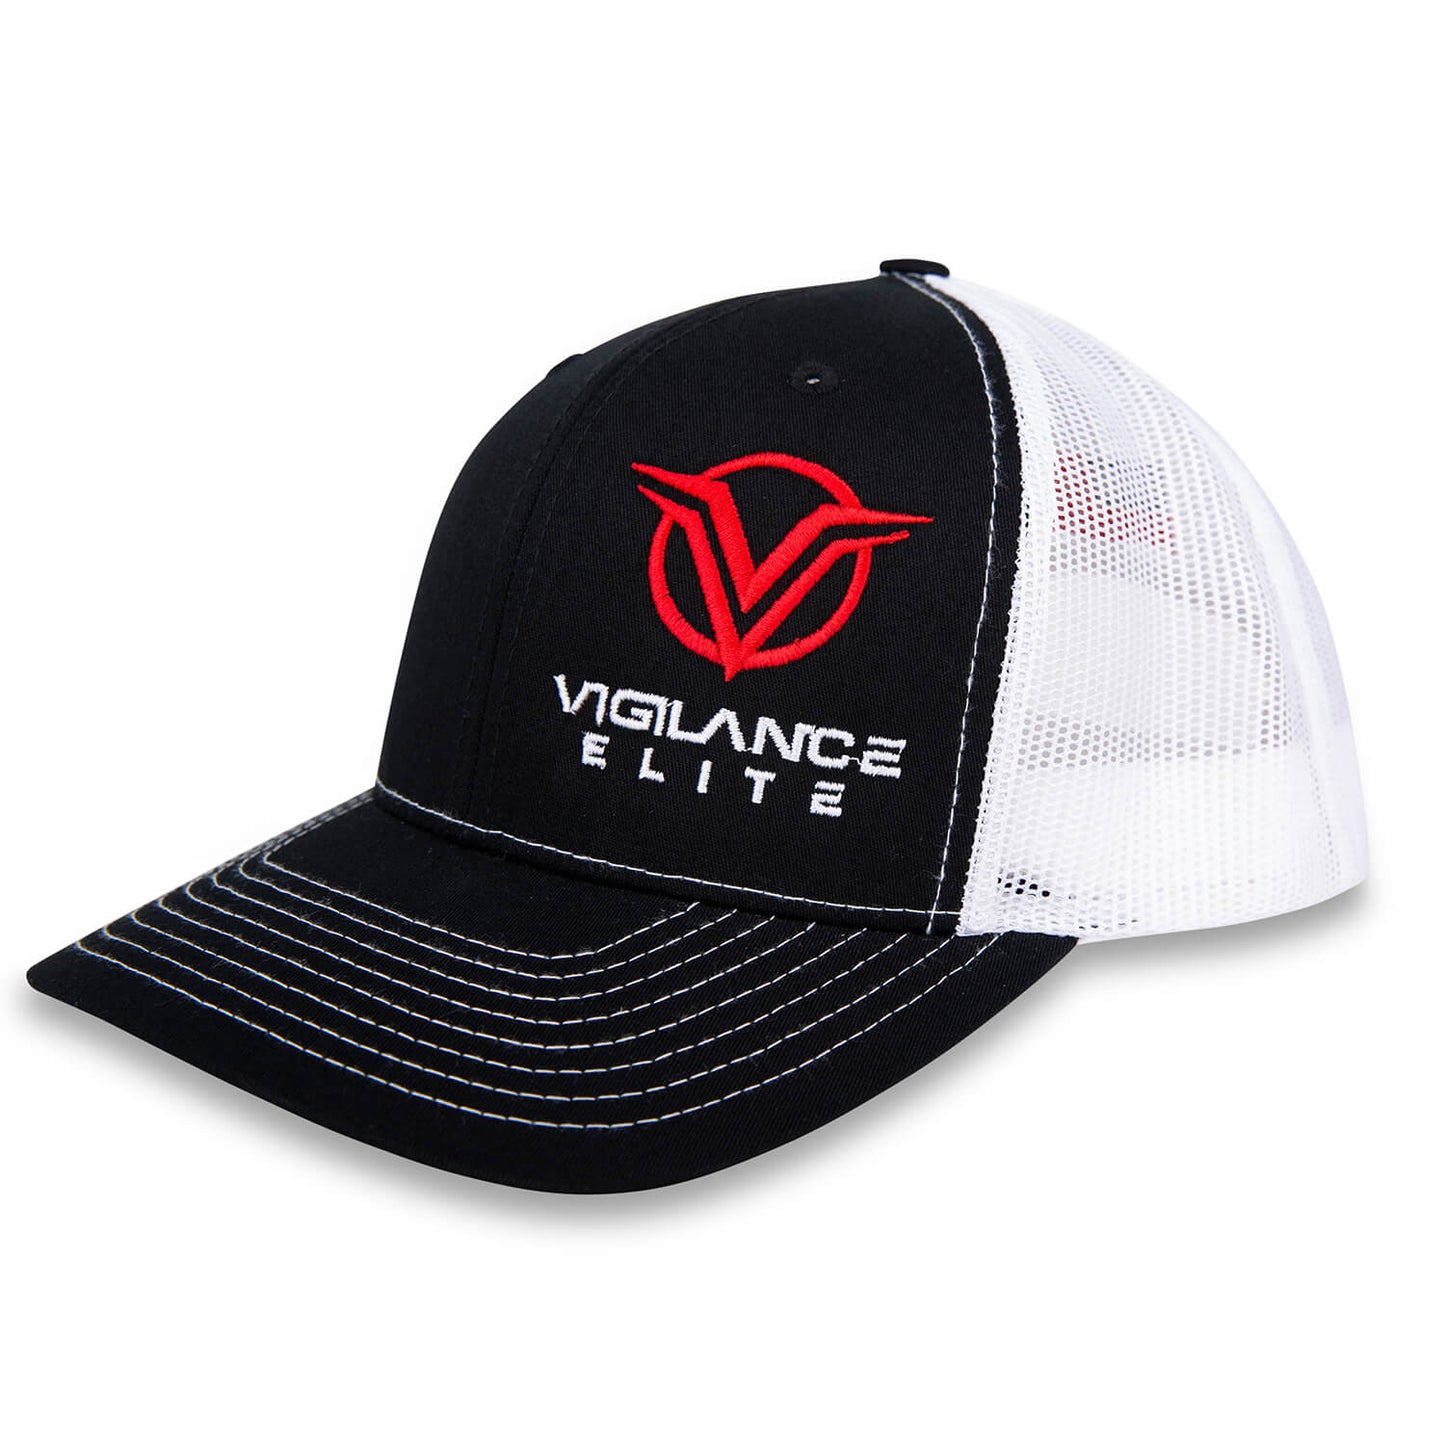 Vigilance Elite Snapback Cap